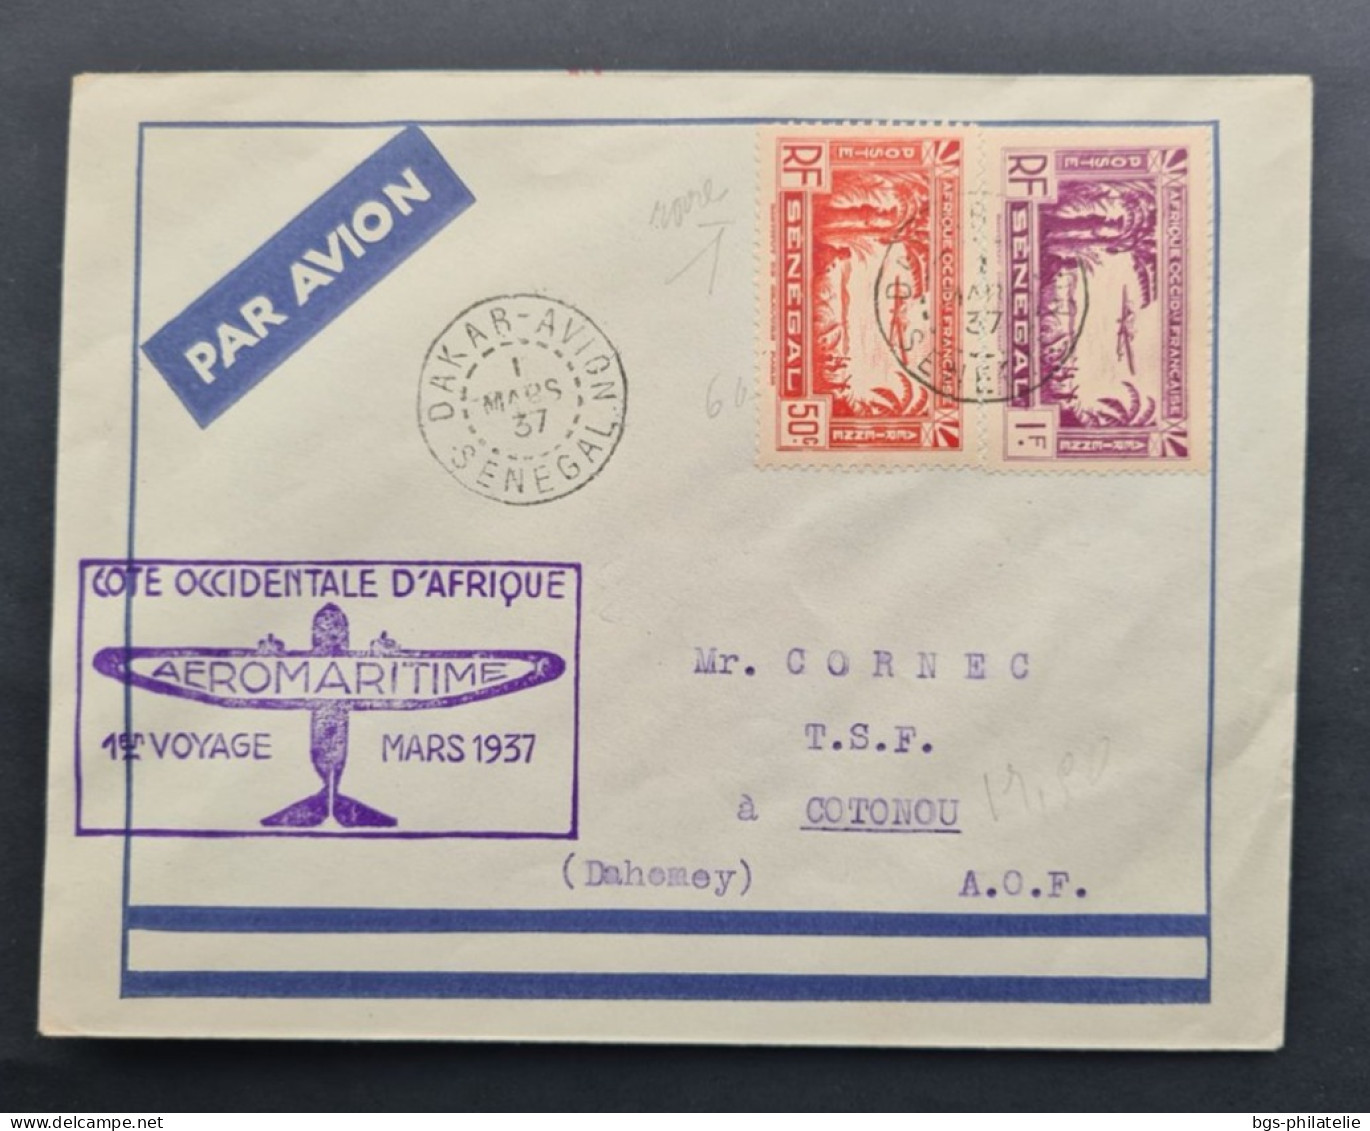 SÉNÉGAL,  Timbres Numéros PA2 Et PA3 Sur Lettre Avec Griffe Aéromaritime Cote Occidentale D'Afrique 1er Voyage Mars 1937 - Lettres & Documents